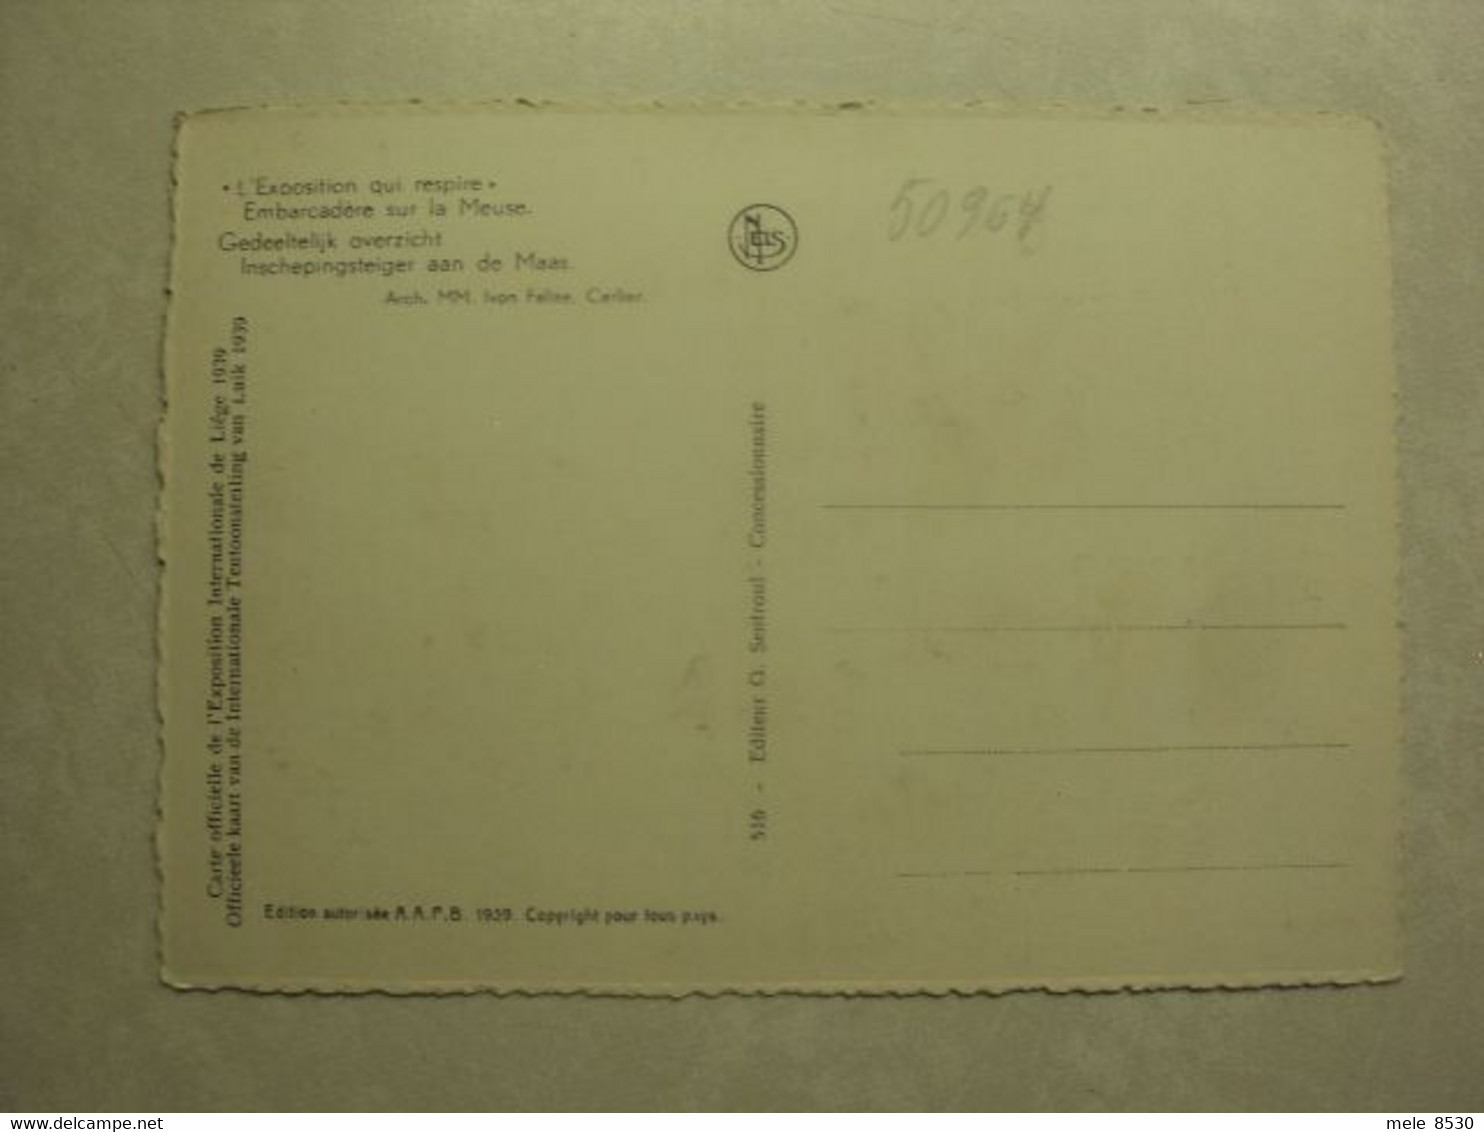 50964 - INTERNATIONALE TENTOONSTELLING VAN LUIK 1939 - INSCHEPINGSTEIGER AAN DE MAAS - ZIE 2 FOTO'S - Tenneville